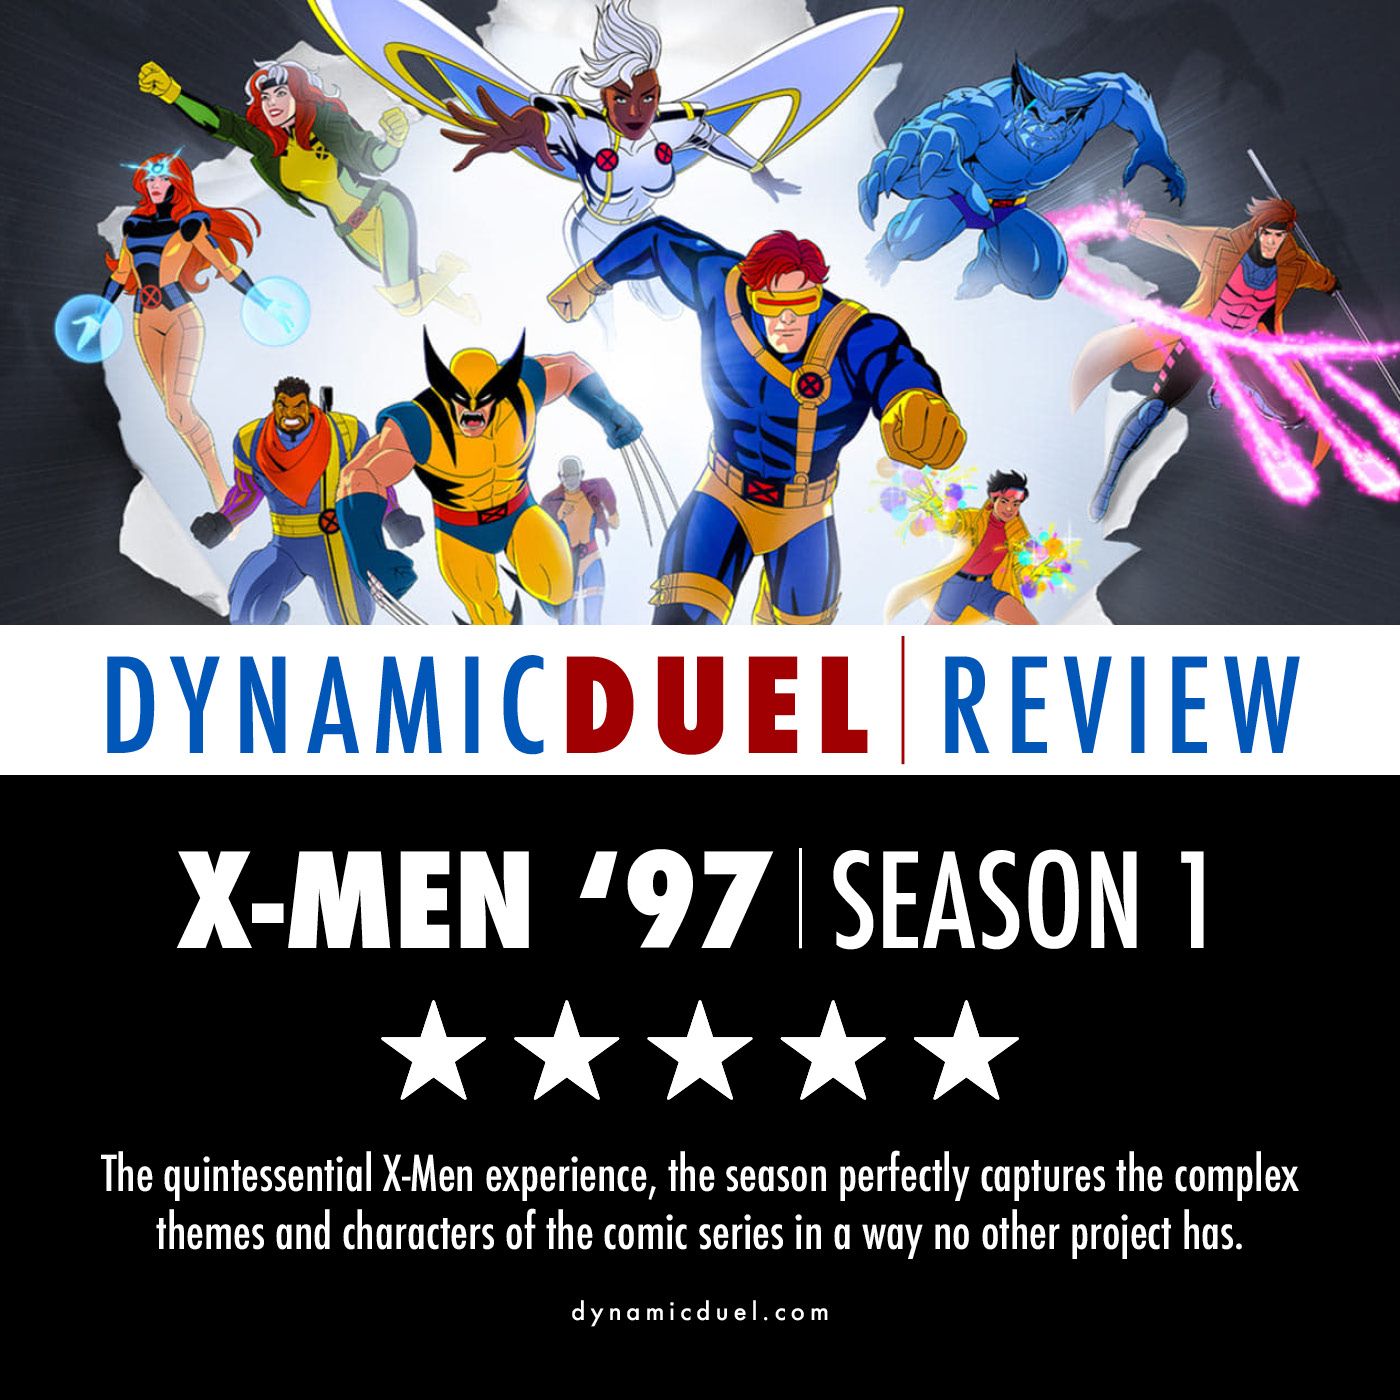 X-Men '97 Season 1 Review